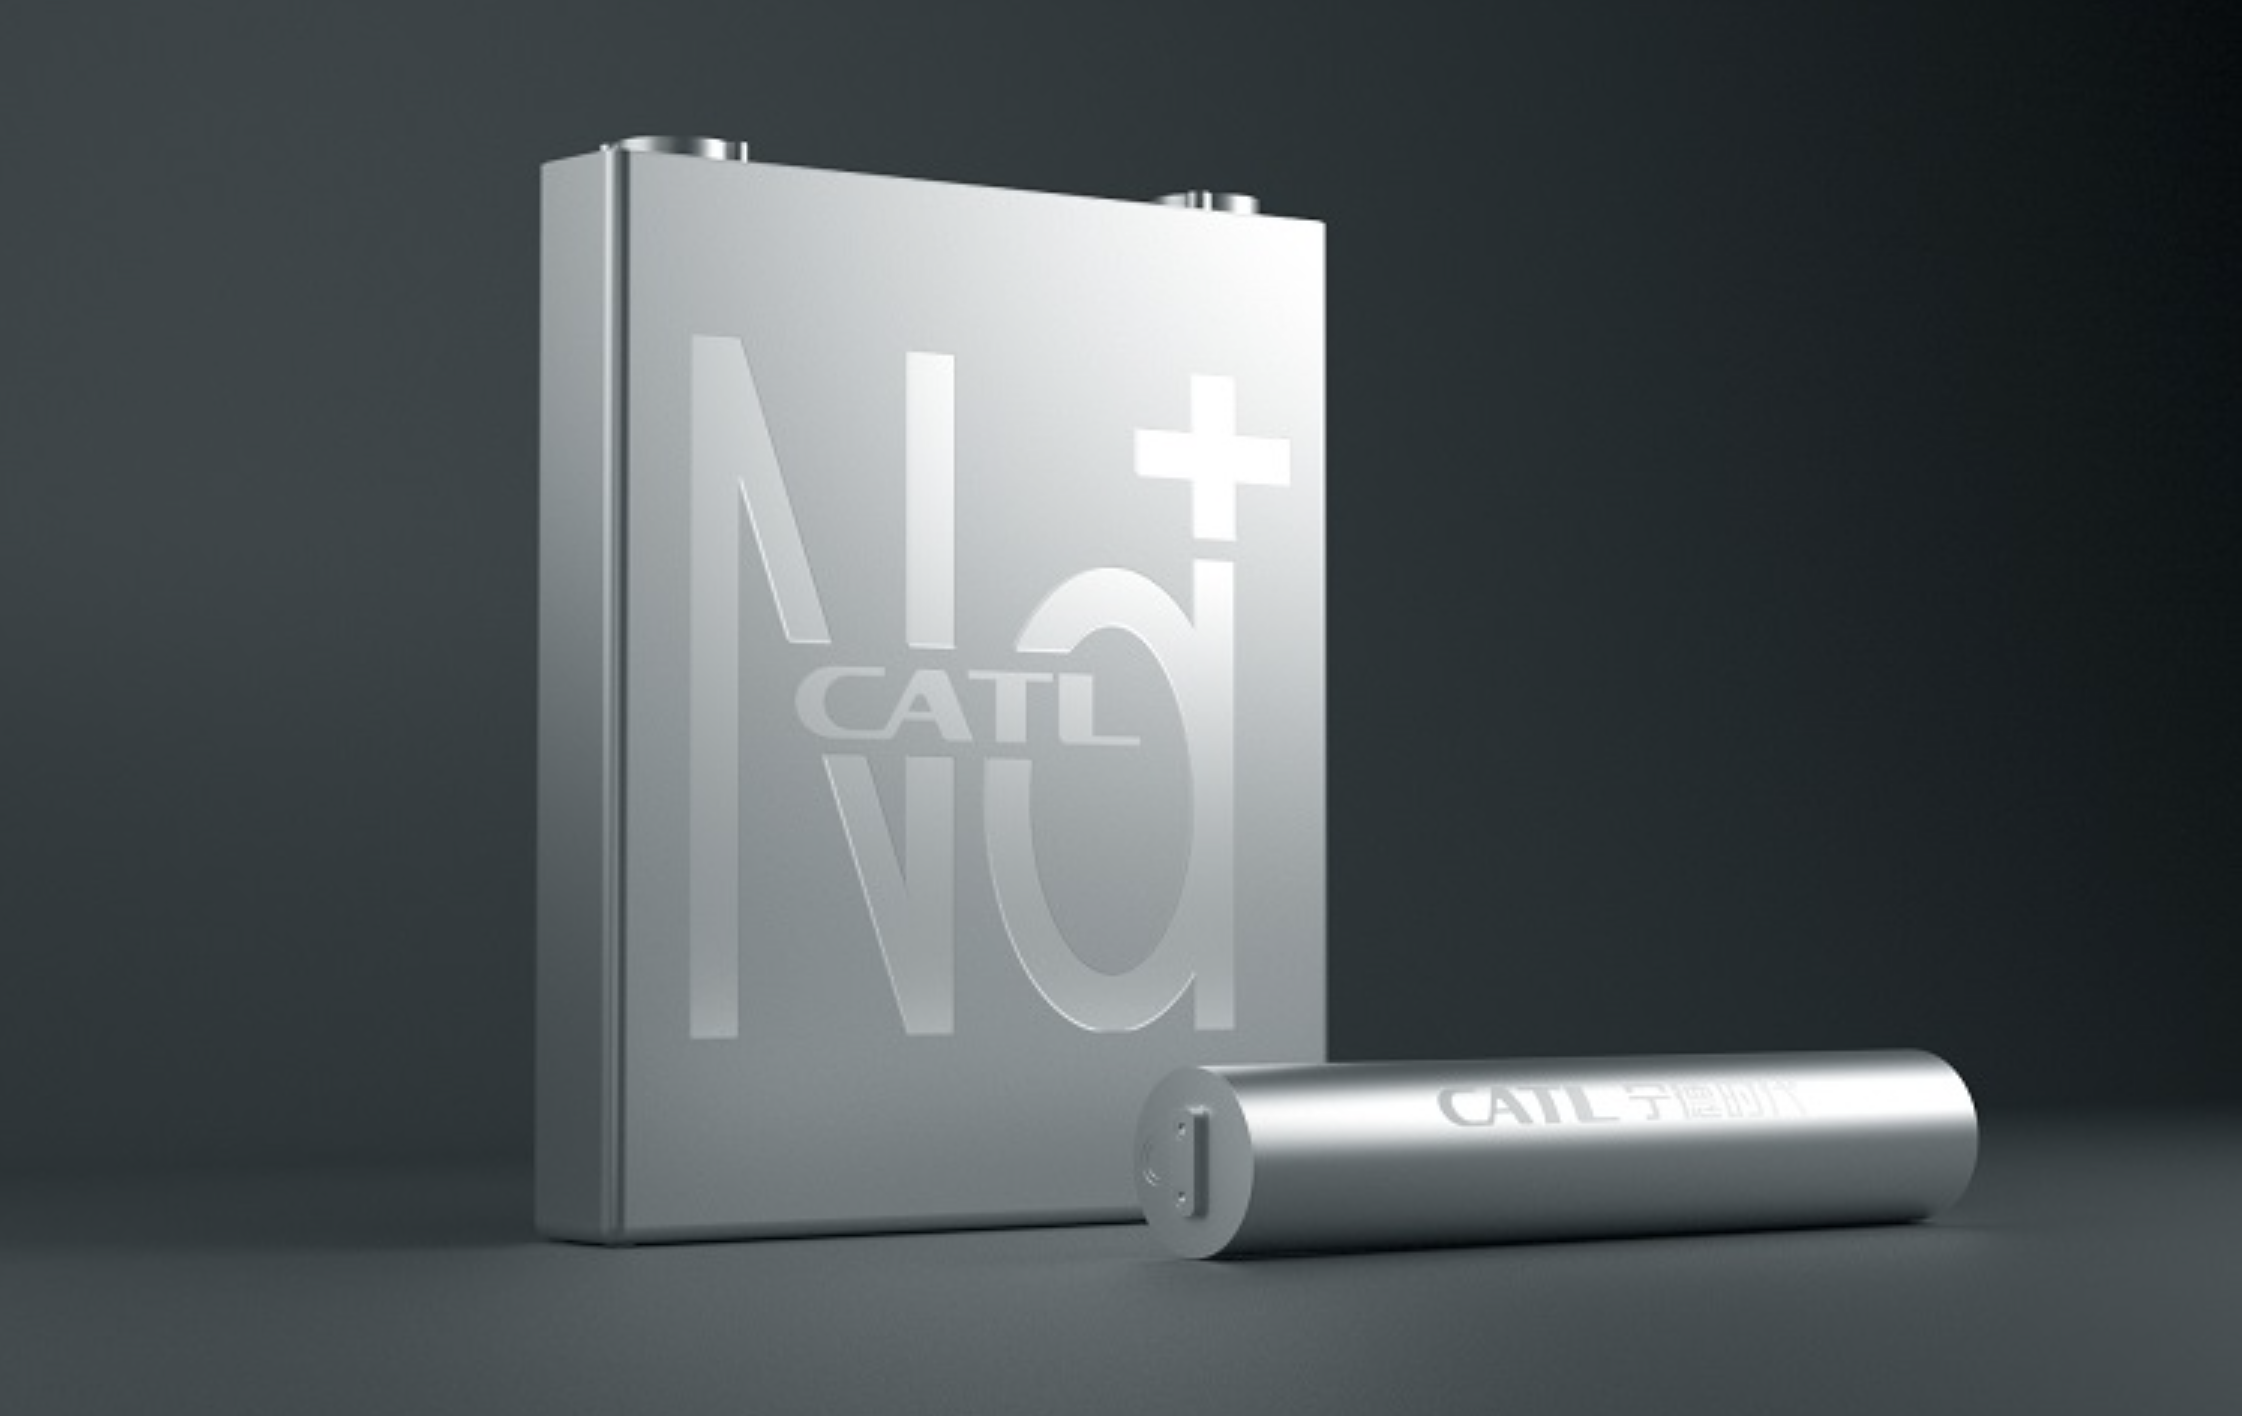 CATL's eerste natrium-ion batterij